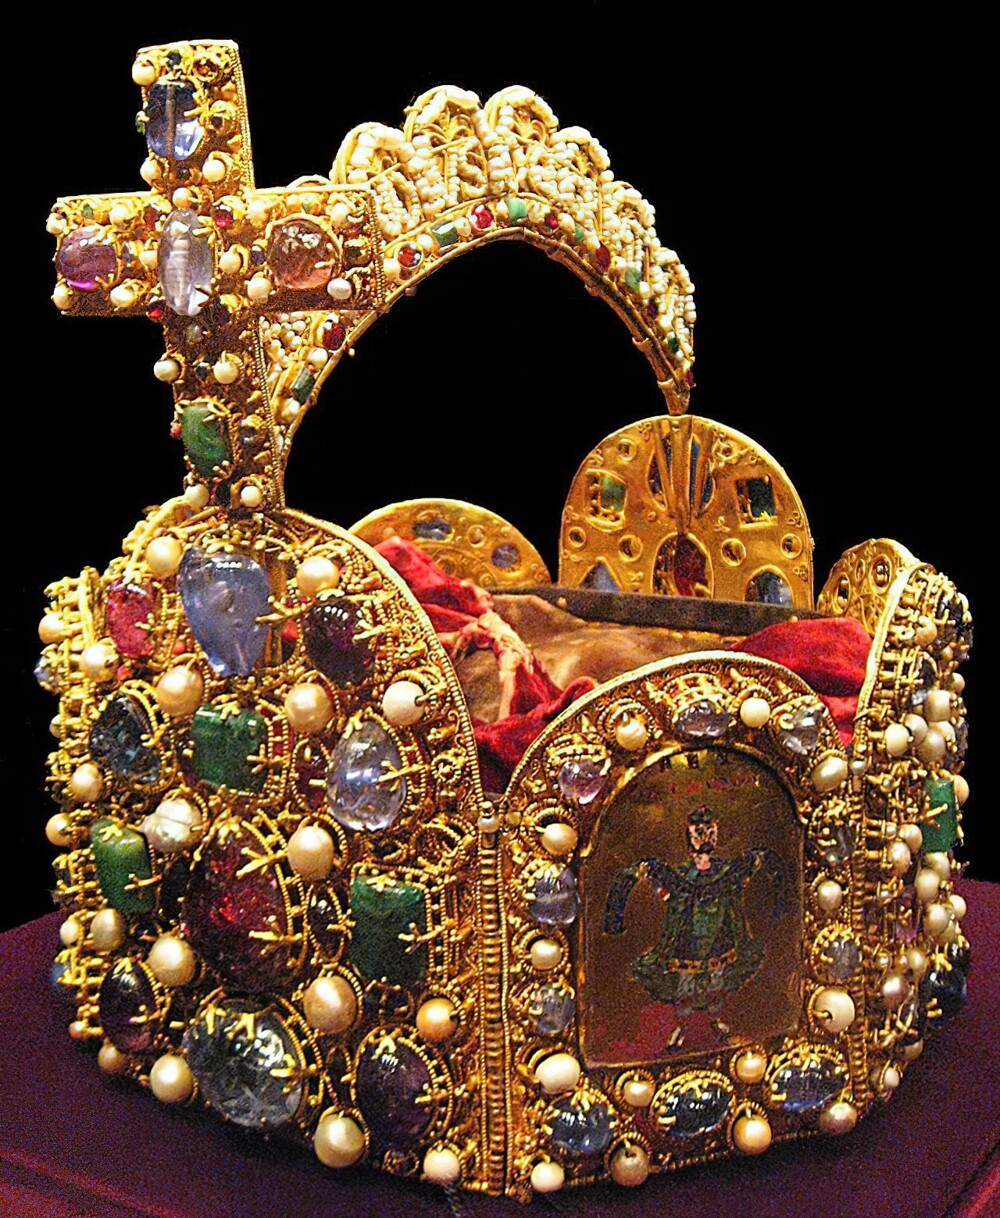 9. Императорская корона Священной Римской империи. Оттон III («Чудо мира») был коронован им в 994 году папой Григорием V. Крест был добавлен в начале 11 века, а арка ок. 1030 г. 